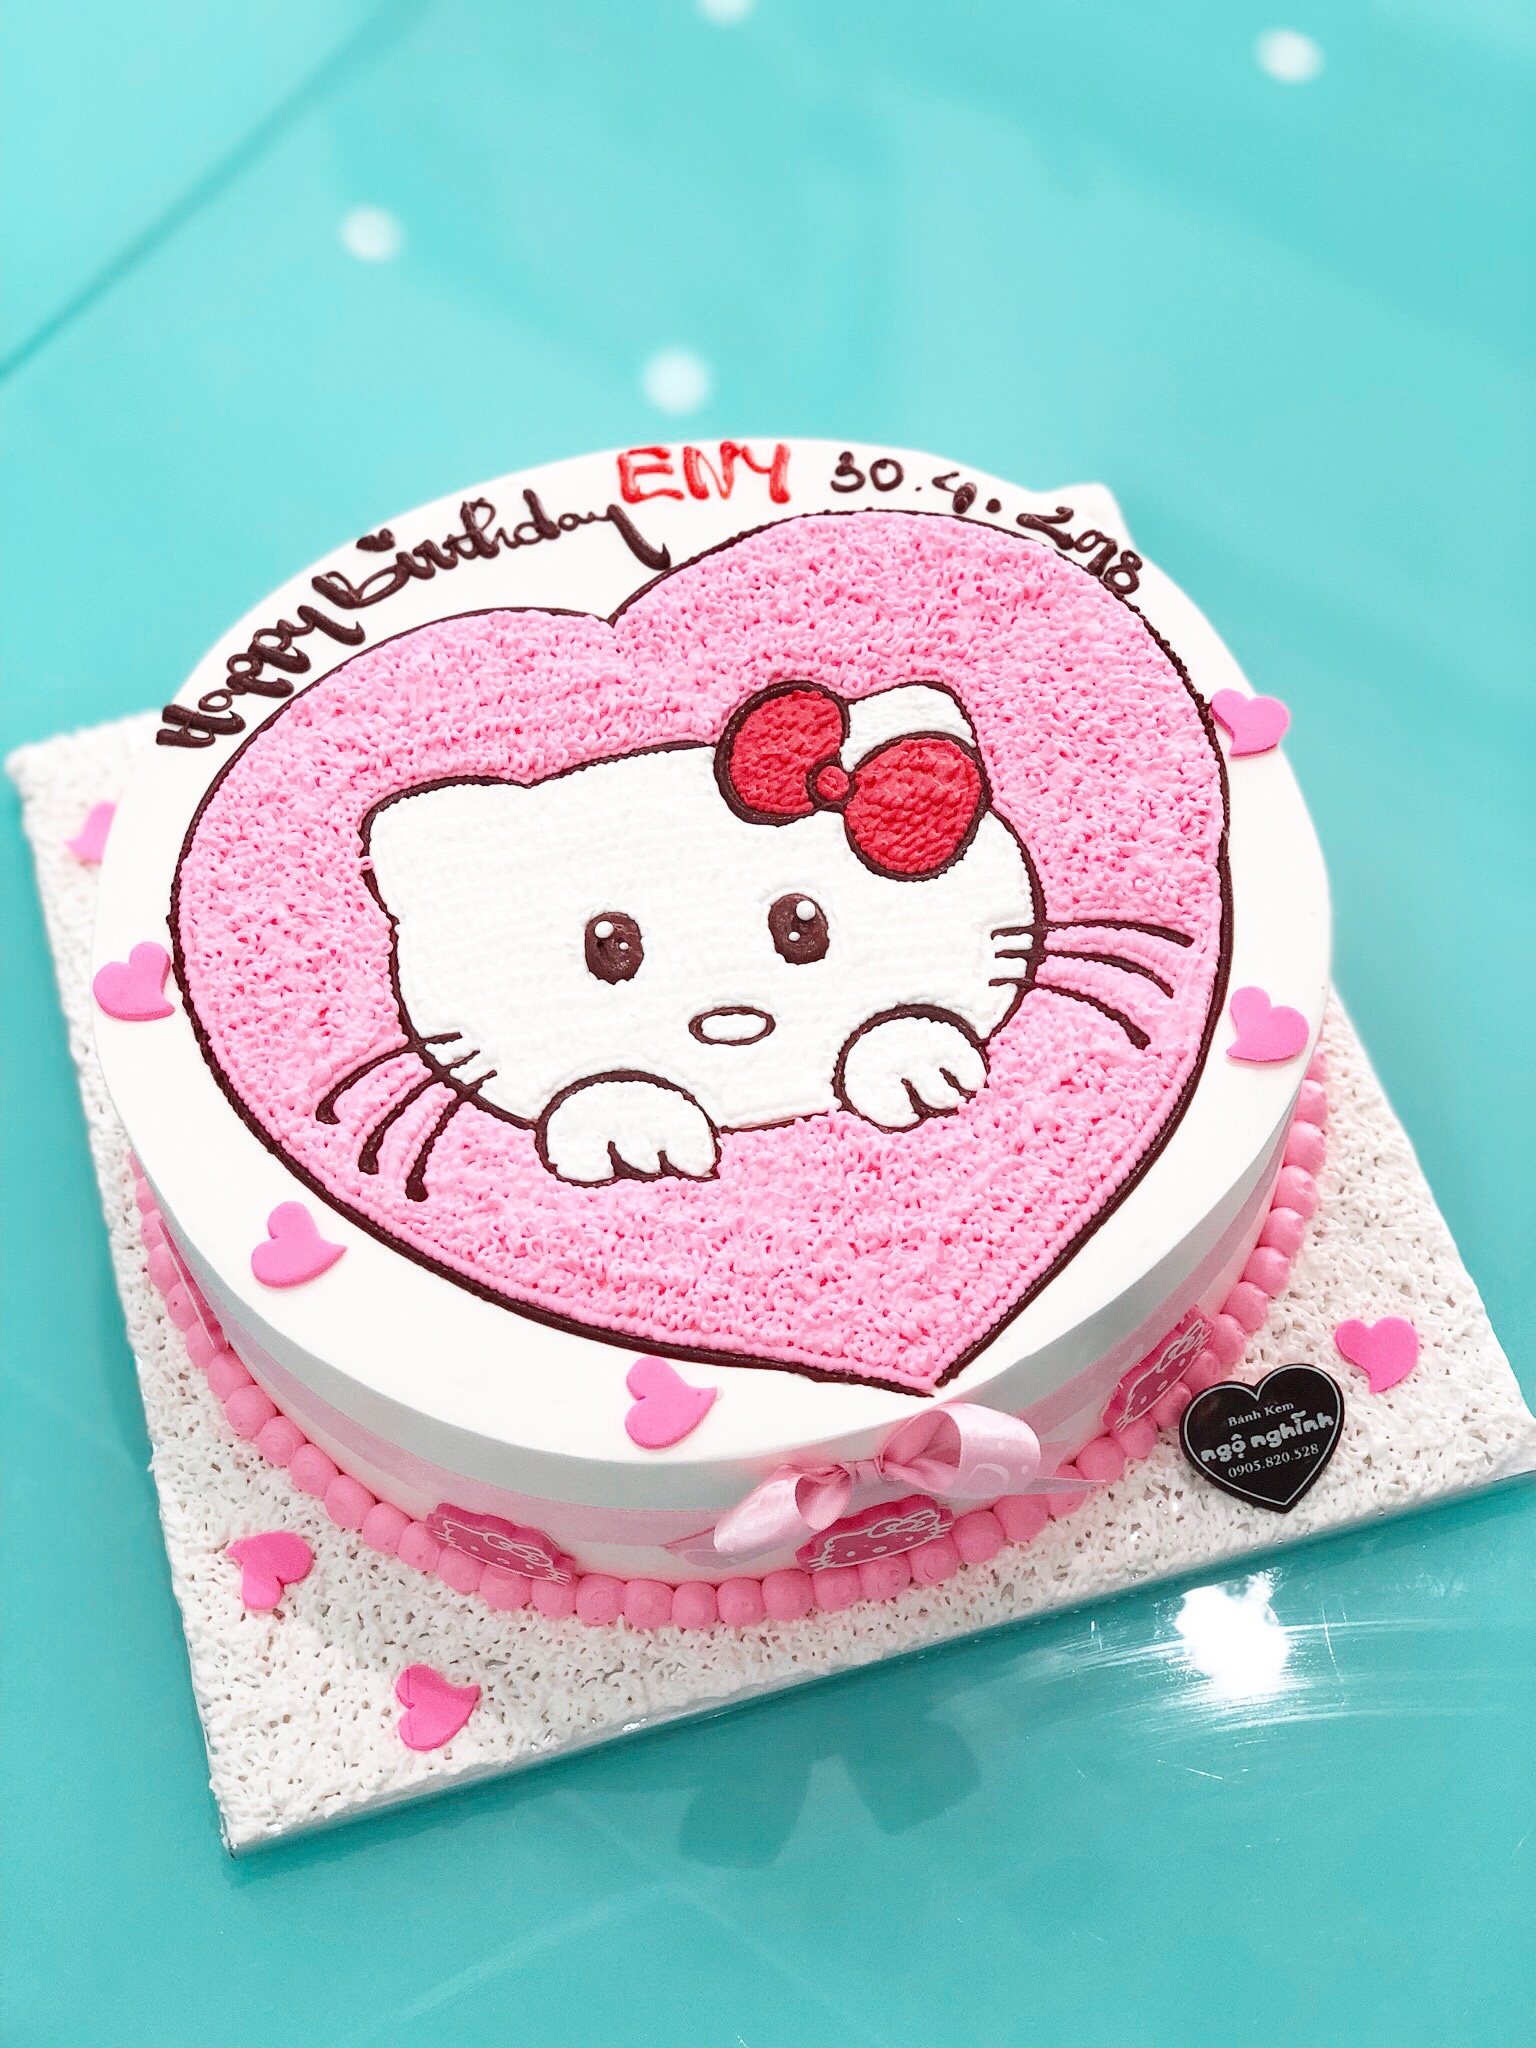 Một chiếc bánh kem sinh nhật hình trái tim Hello Kitty sẽ là lựa chọn hoàn hảo cho những tín đồ của chú mèo xinh đẹp này. Hình ảnh Hello Kitty được vẽ nghệ thuật trên bề mặt bánh, cùng với hương vị đầy ngọt ngào, chắc chắn sẽ thổi bay mọi cơn buồn cho bất kỳ ai. Hãy đến và thưởng thức chiếc bánh tuyệt vời này.